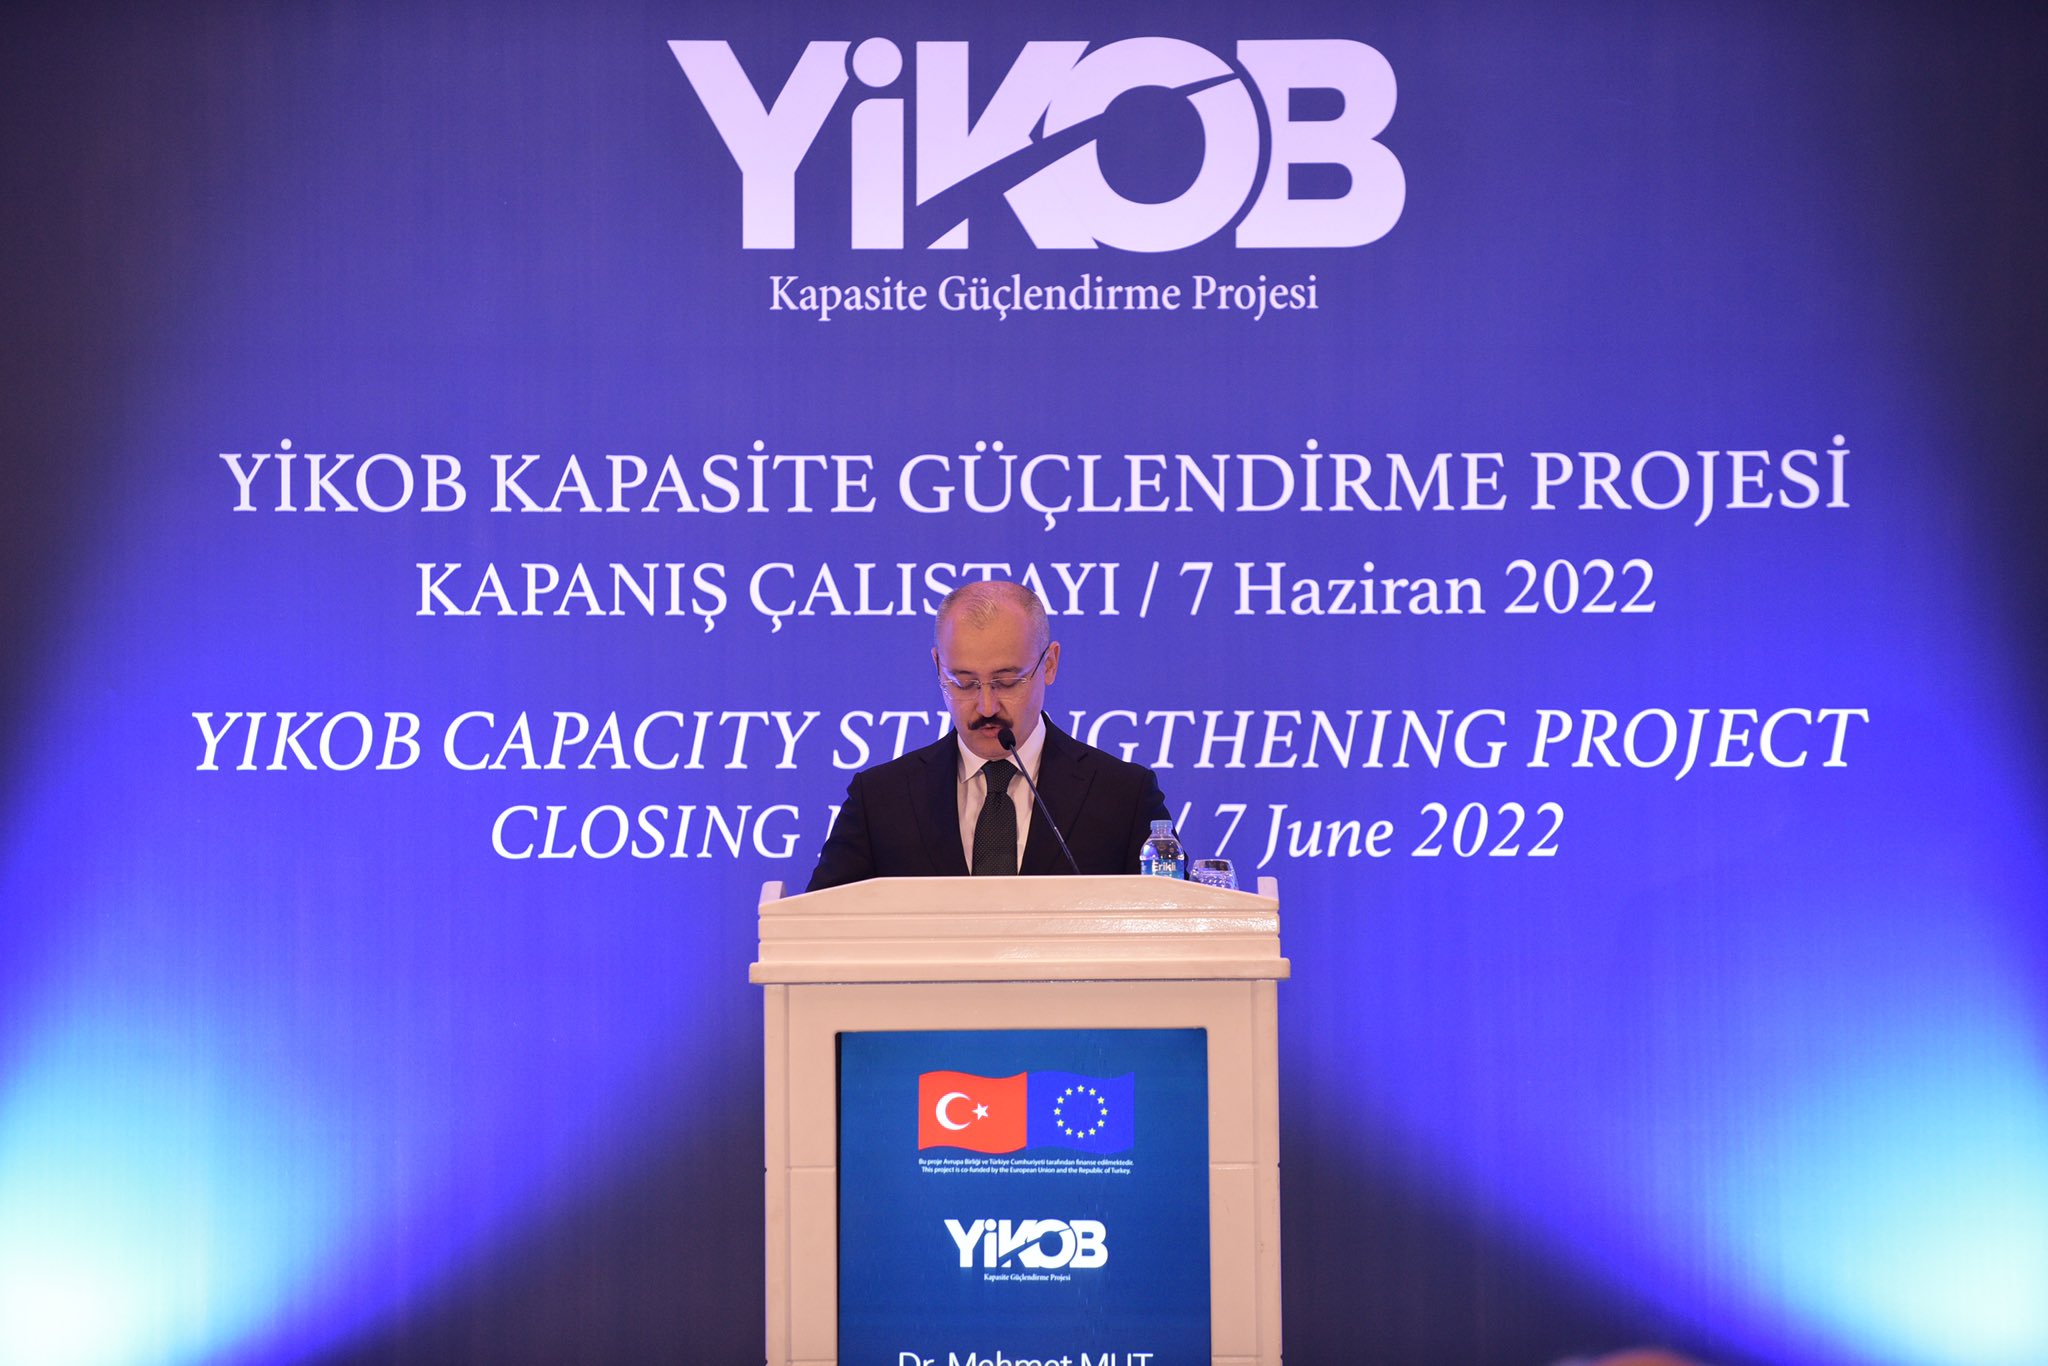 İçişleri Bakanlığı, Strateji Geliştirme Başkanı Dr. Mehmet MUT